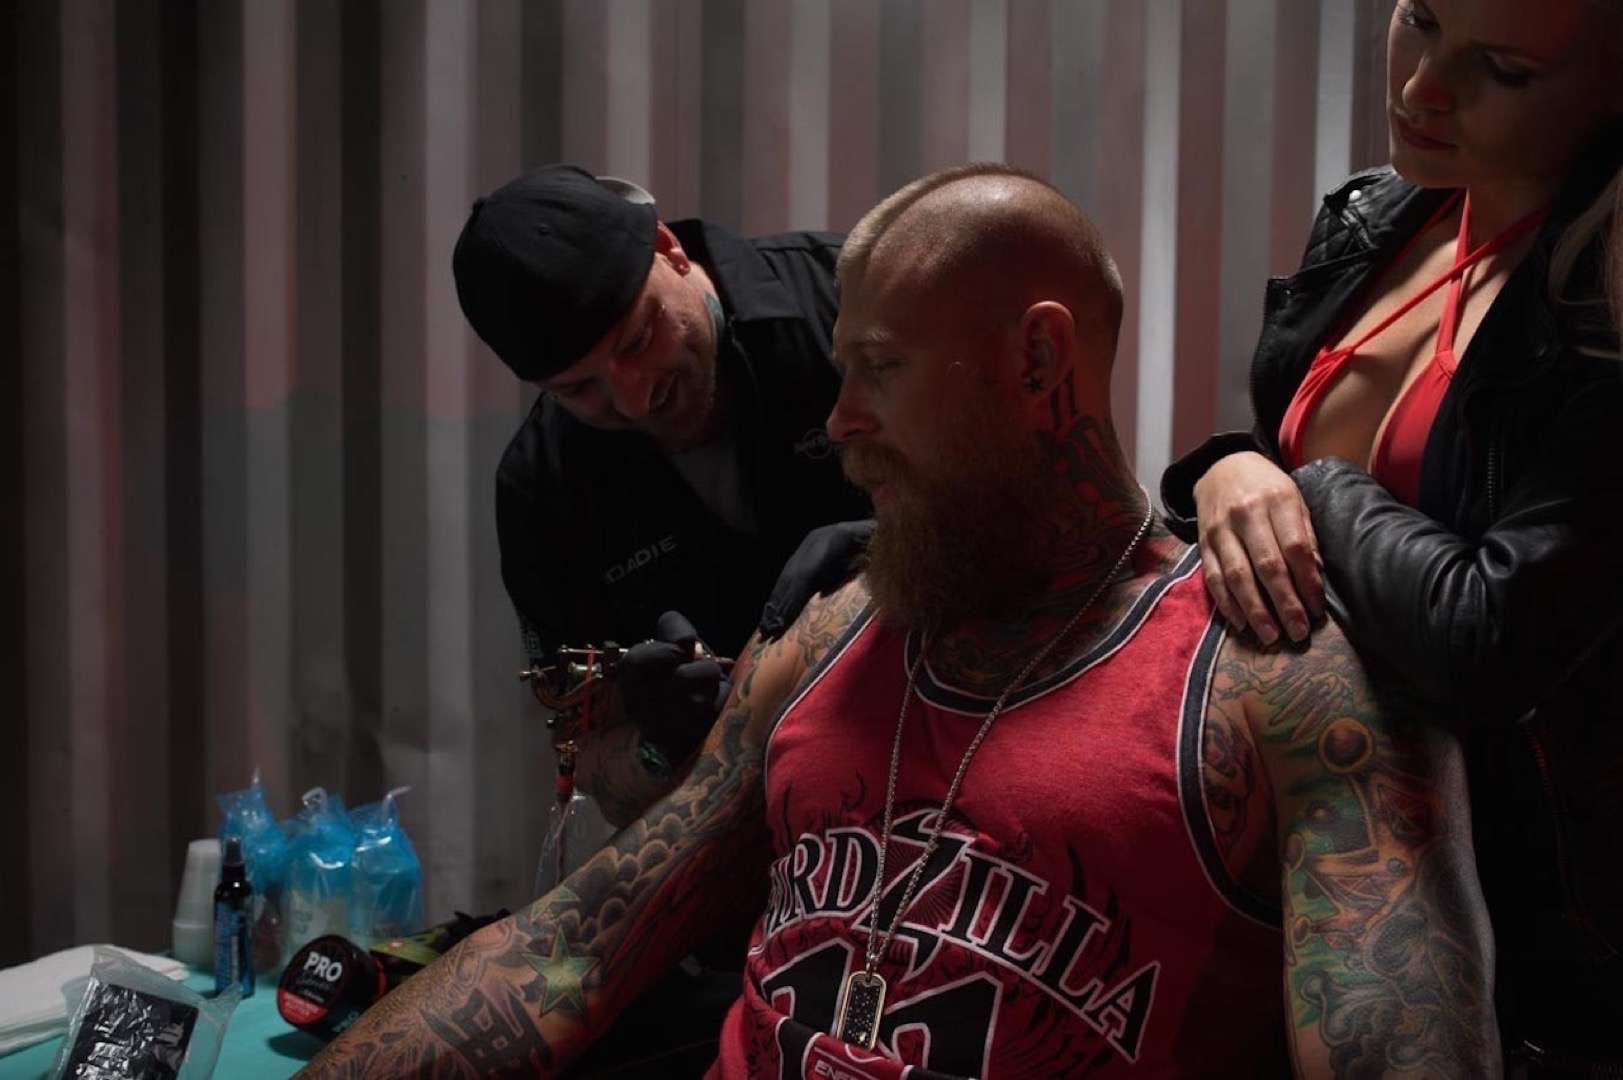 Tattooed man with mohawk getting tattooed by tattoo artist